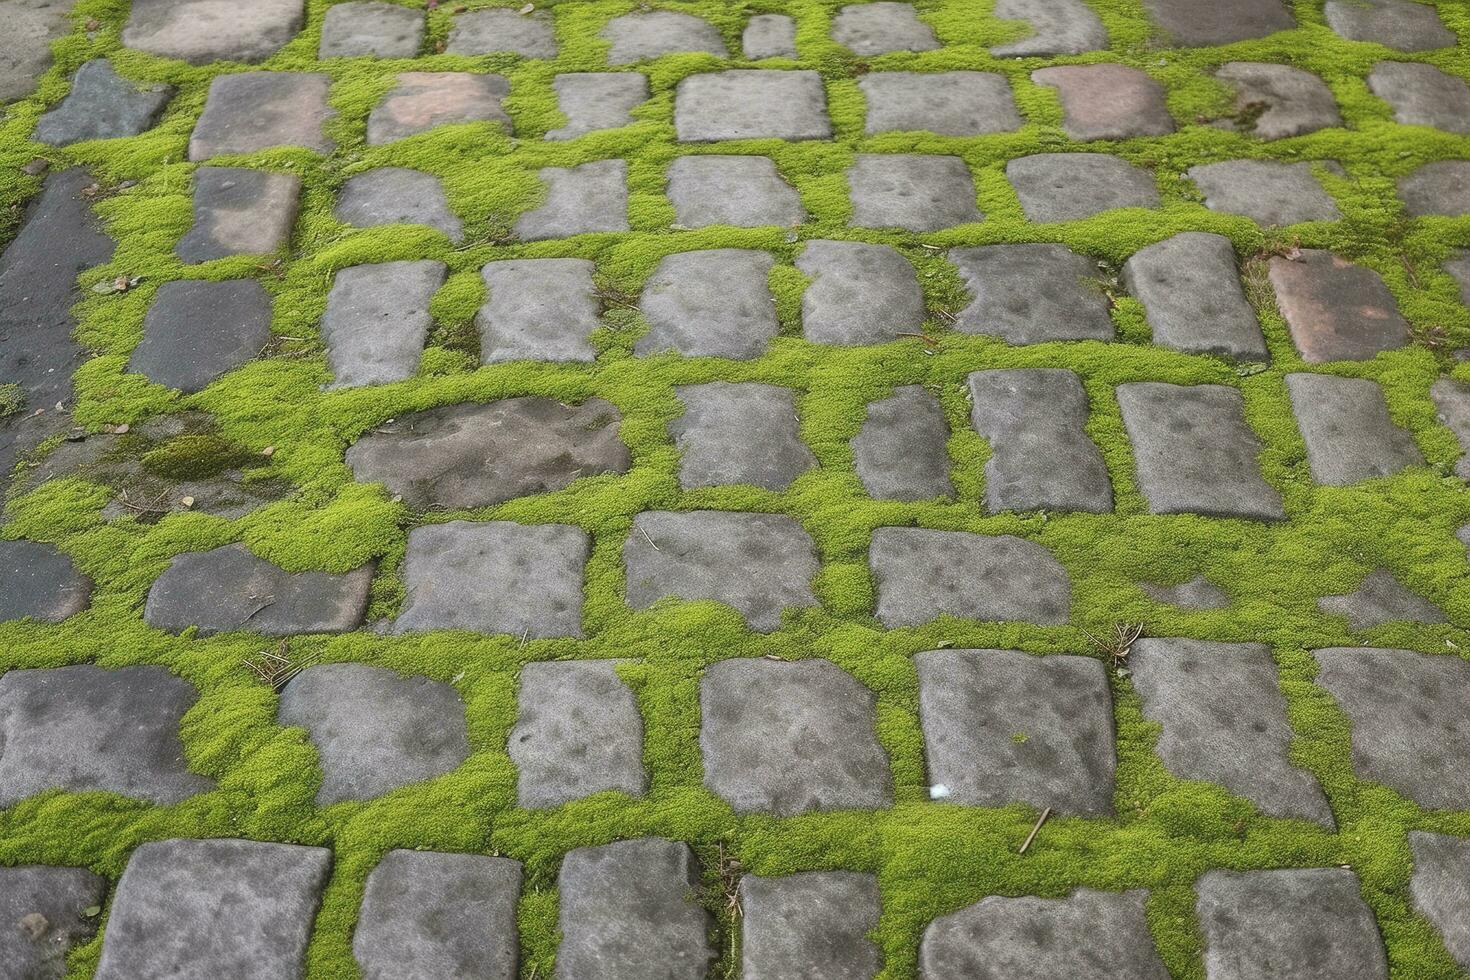 geplaveid stoep, groen mos tussen steen achtergrond. oud steen bestrating textuur. kasseien detailopname met groen gras in de naden. steen geplaveid loopbrug in oud stad- foto